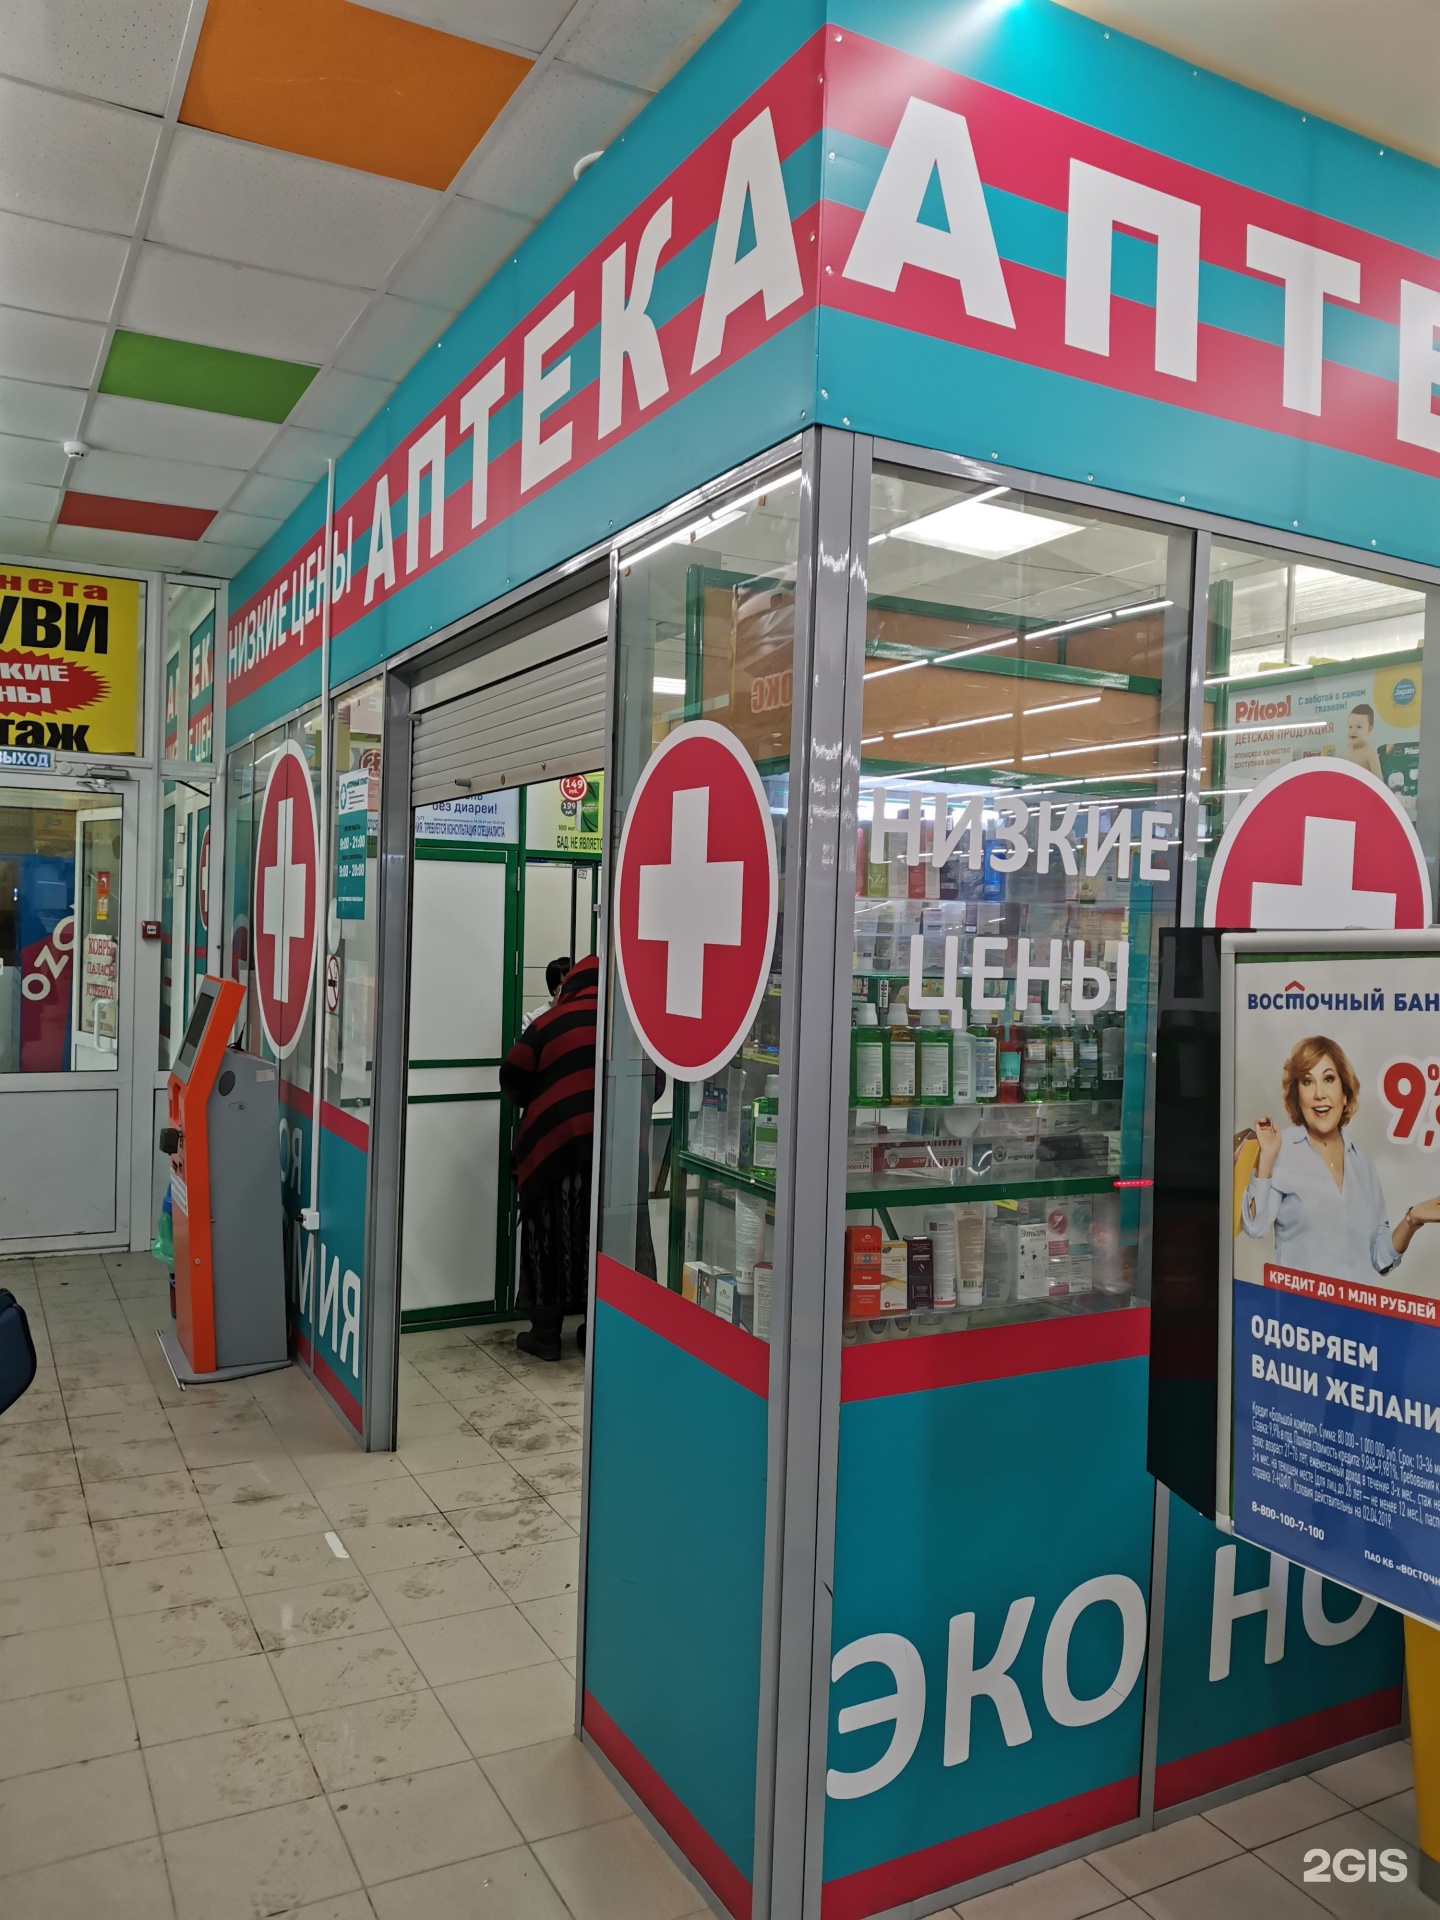 Ритм Аптека Официальный Сайт Брянск